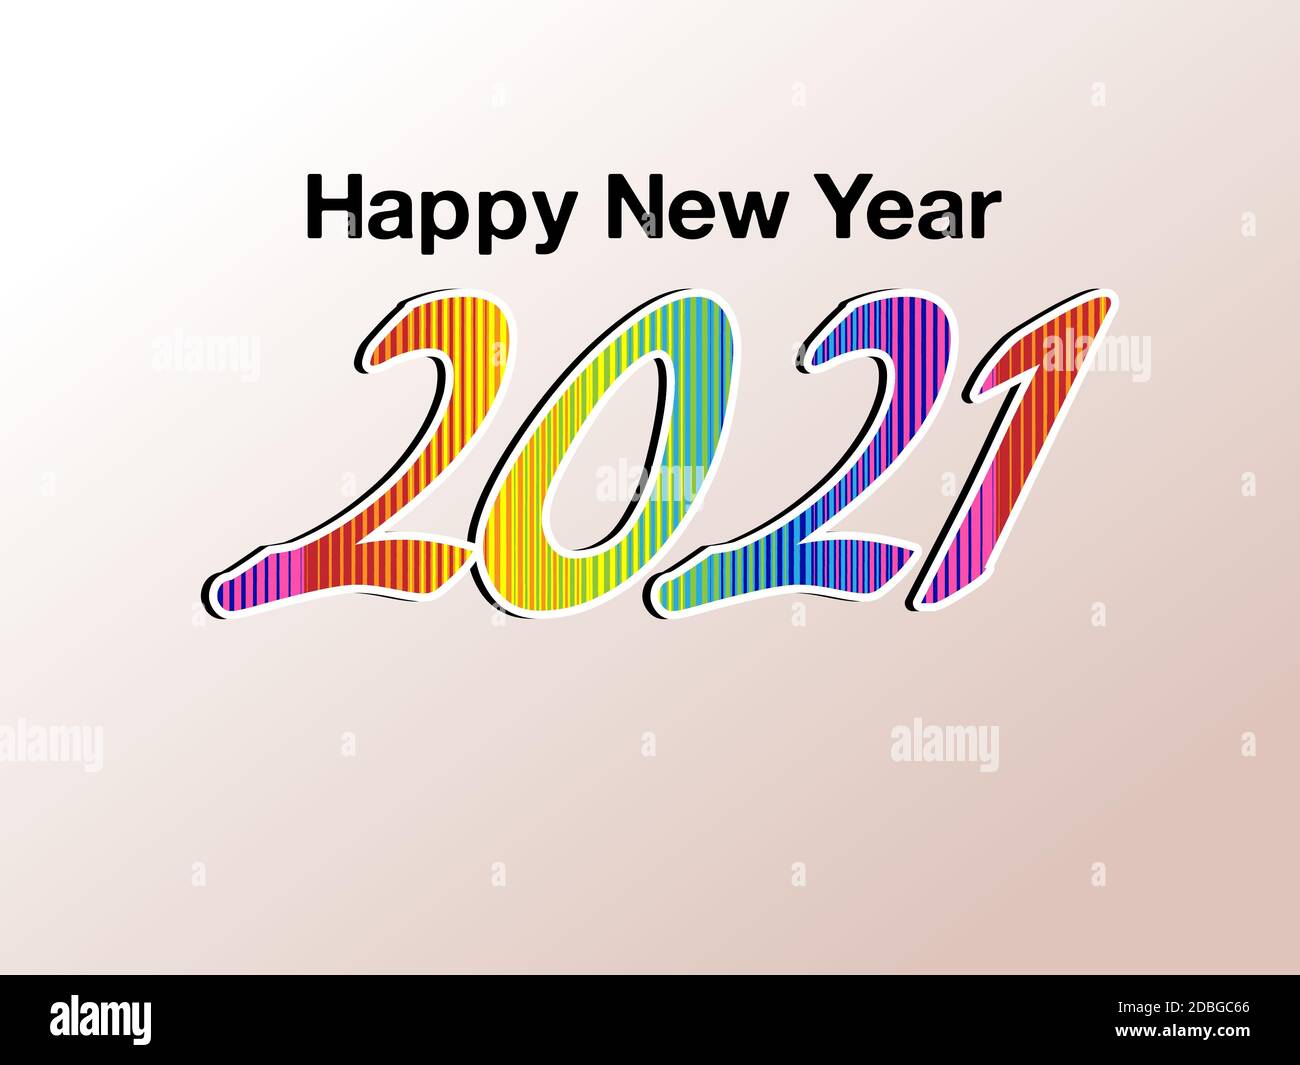 Un'illustrazione colorata di un felice anno nuovo 2021, che quest'anno è stato pieno di pandemia causata dal virus della corona, e spero che quest'anno 2021 sarà migliore. Foto Stock